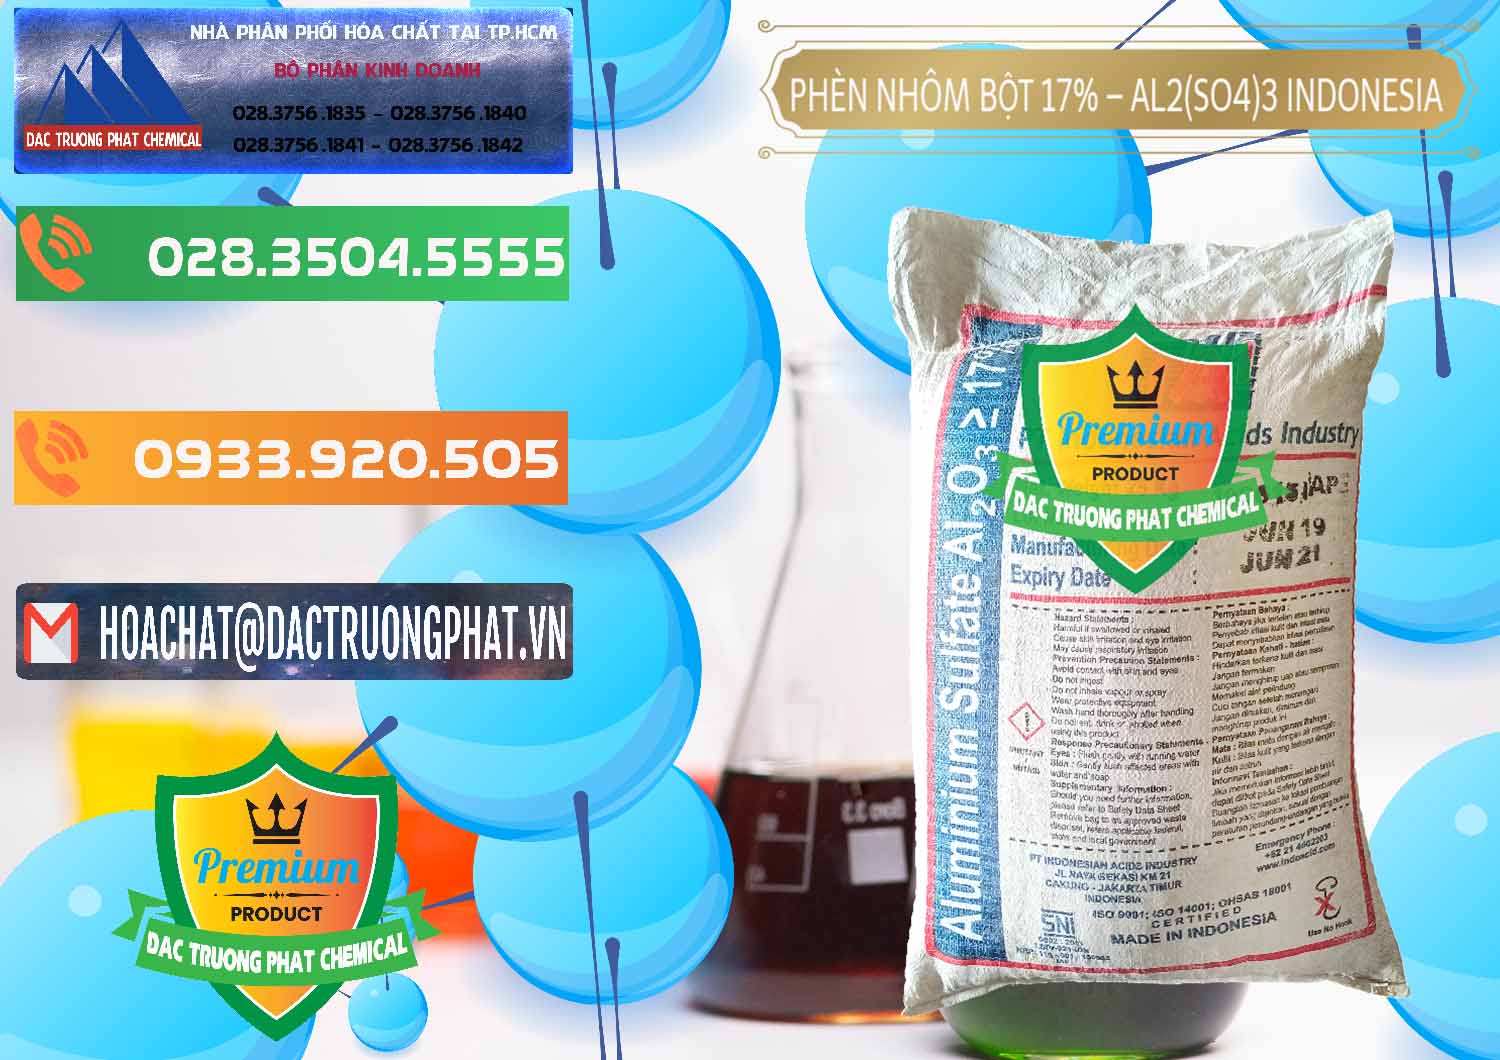 Đơn vị chuyên cung cấp ( bán ) Phèn Nhôm Bột - Al2(SO4)3 17% bao 25kg Indonesia - 0114 - Cty chuyên kinh doanh & phân phối hóa chất tại TP.HCM - hoachatxulynuoc.com.vn